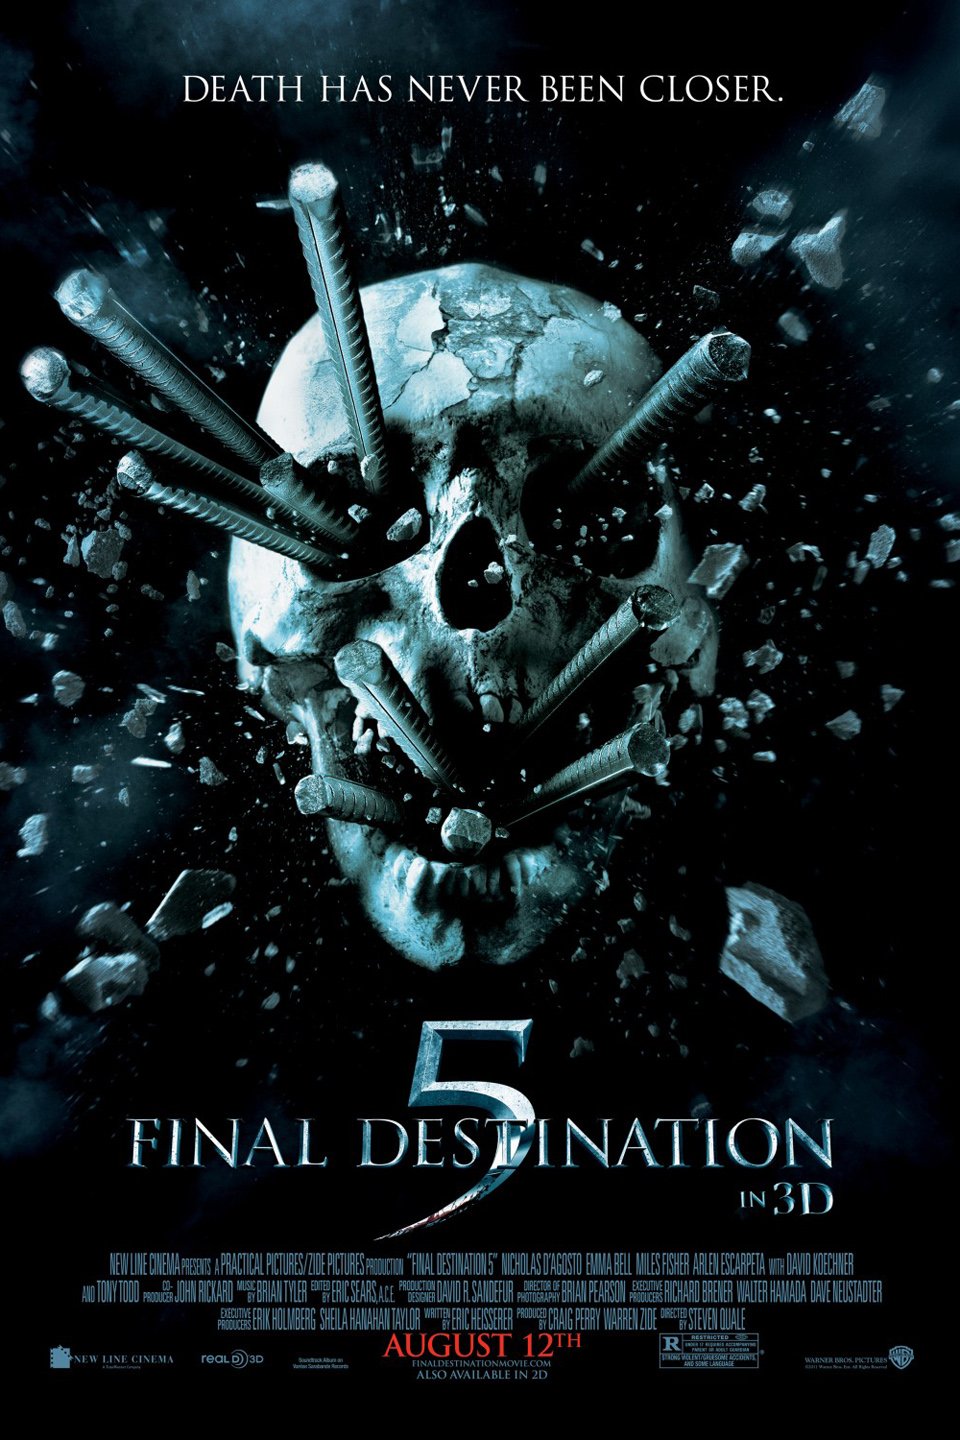 final destination 4 full movie free online